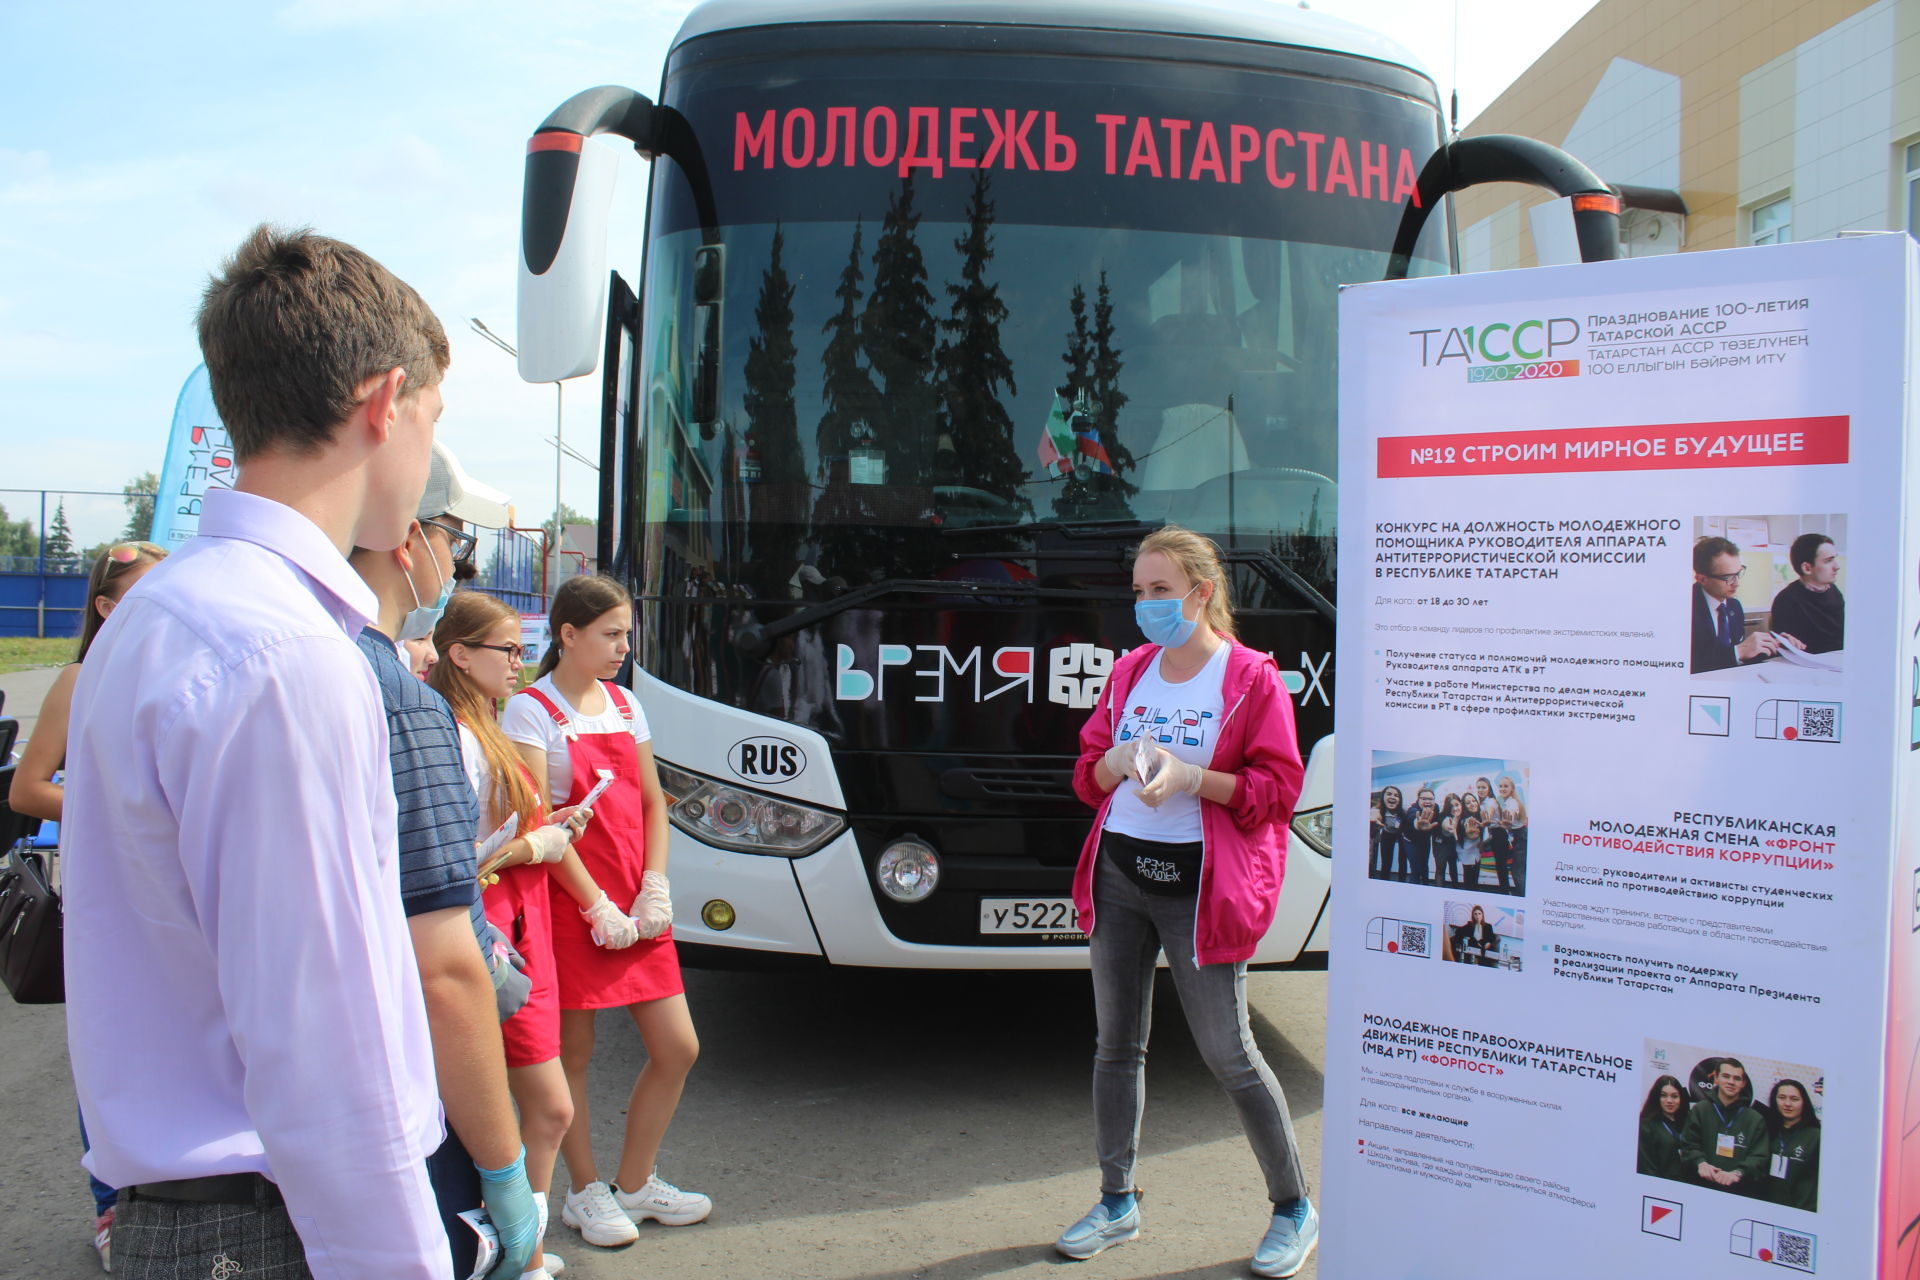 Автобус «Время молодых» в Дрожжановском районе